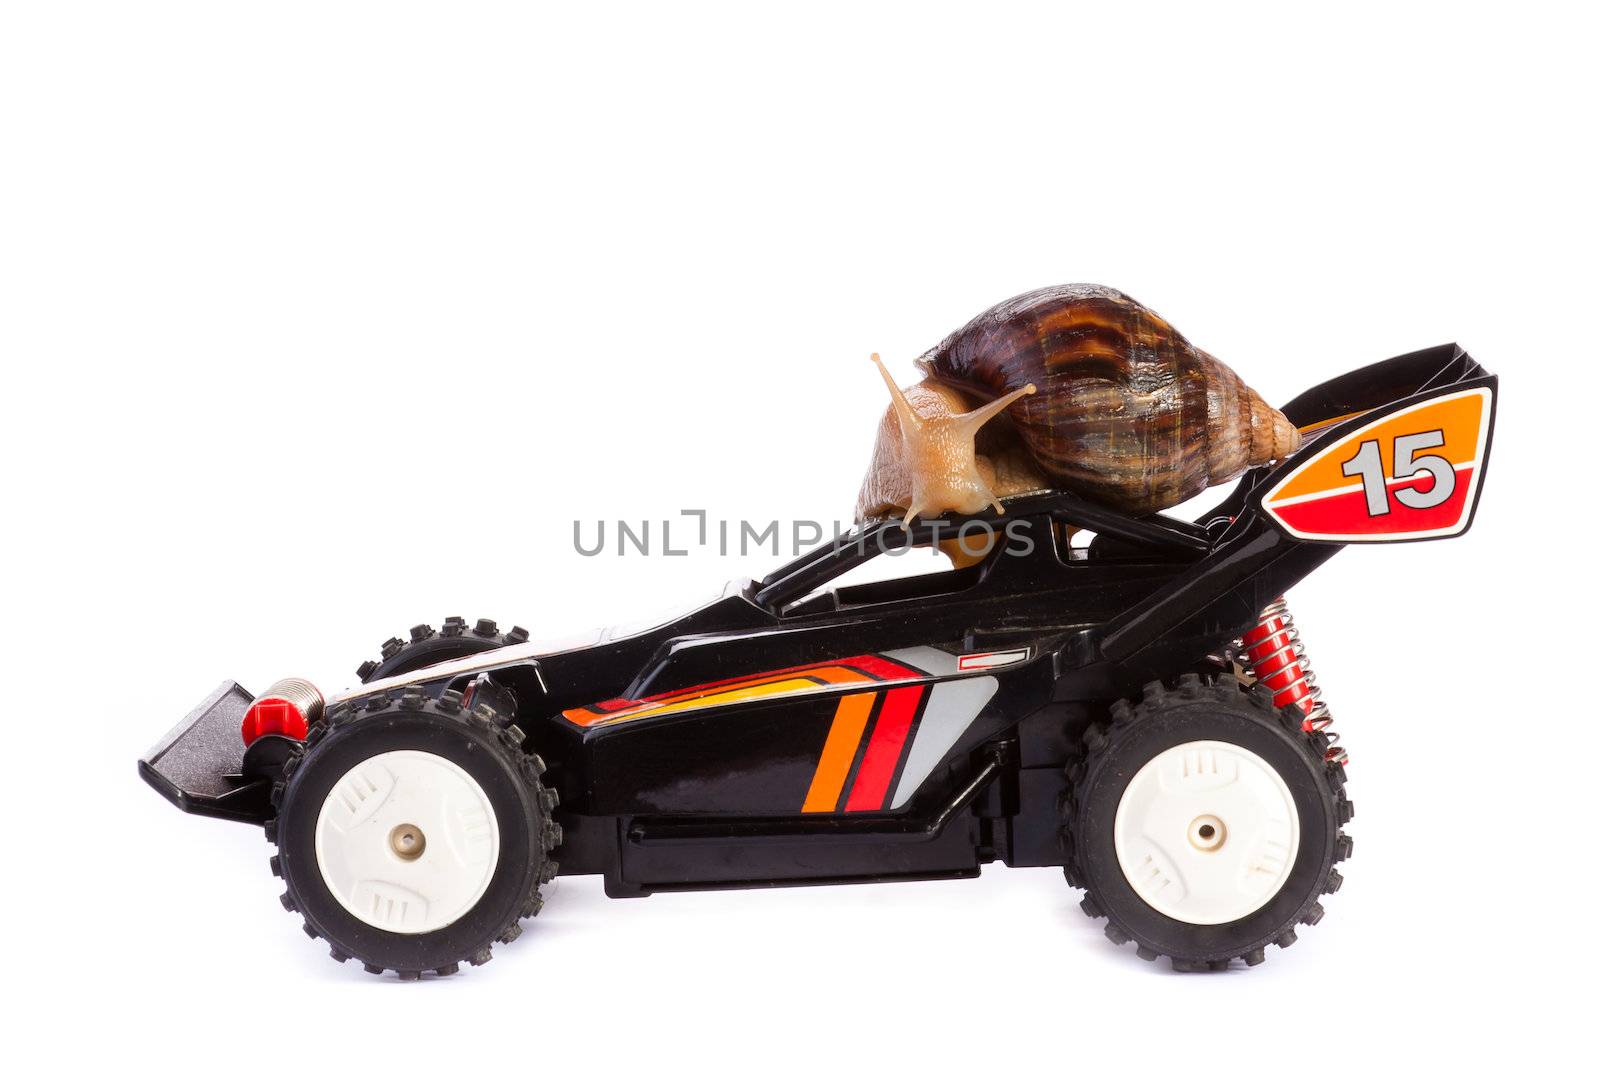 Snail on an RC Toy Race Car